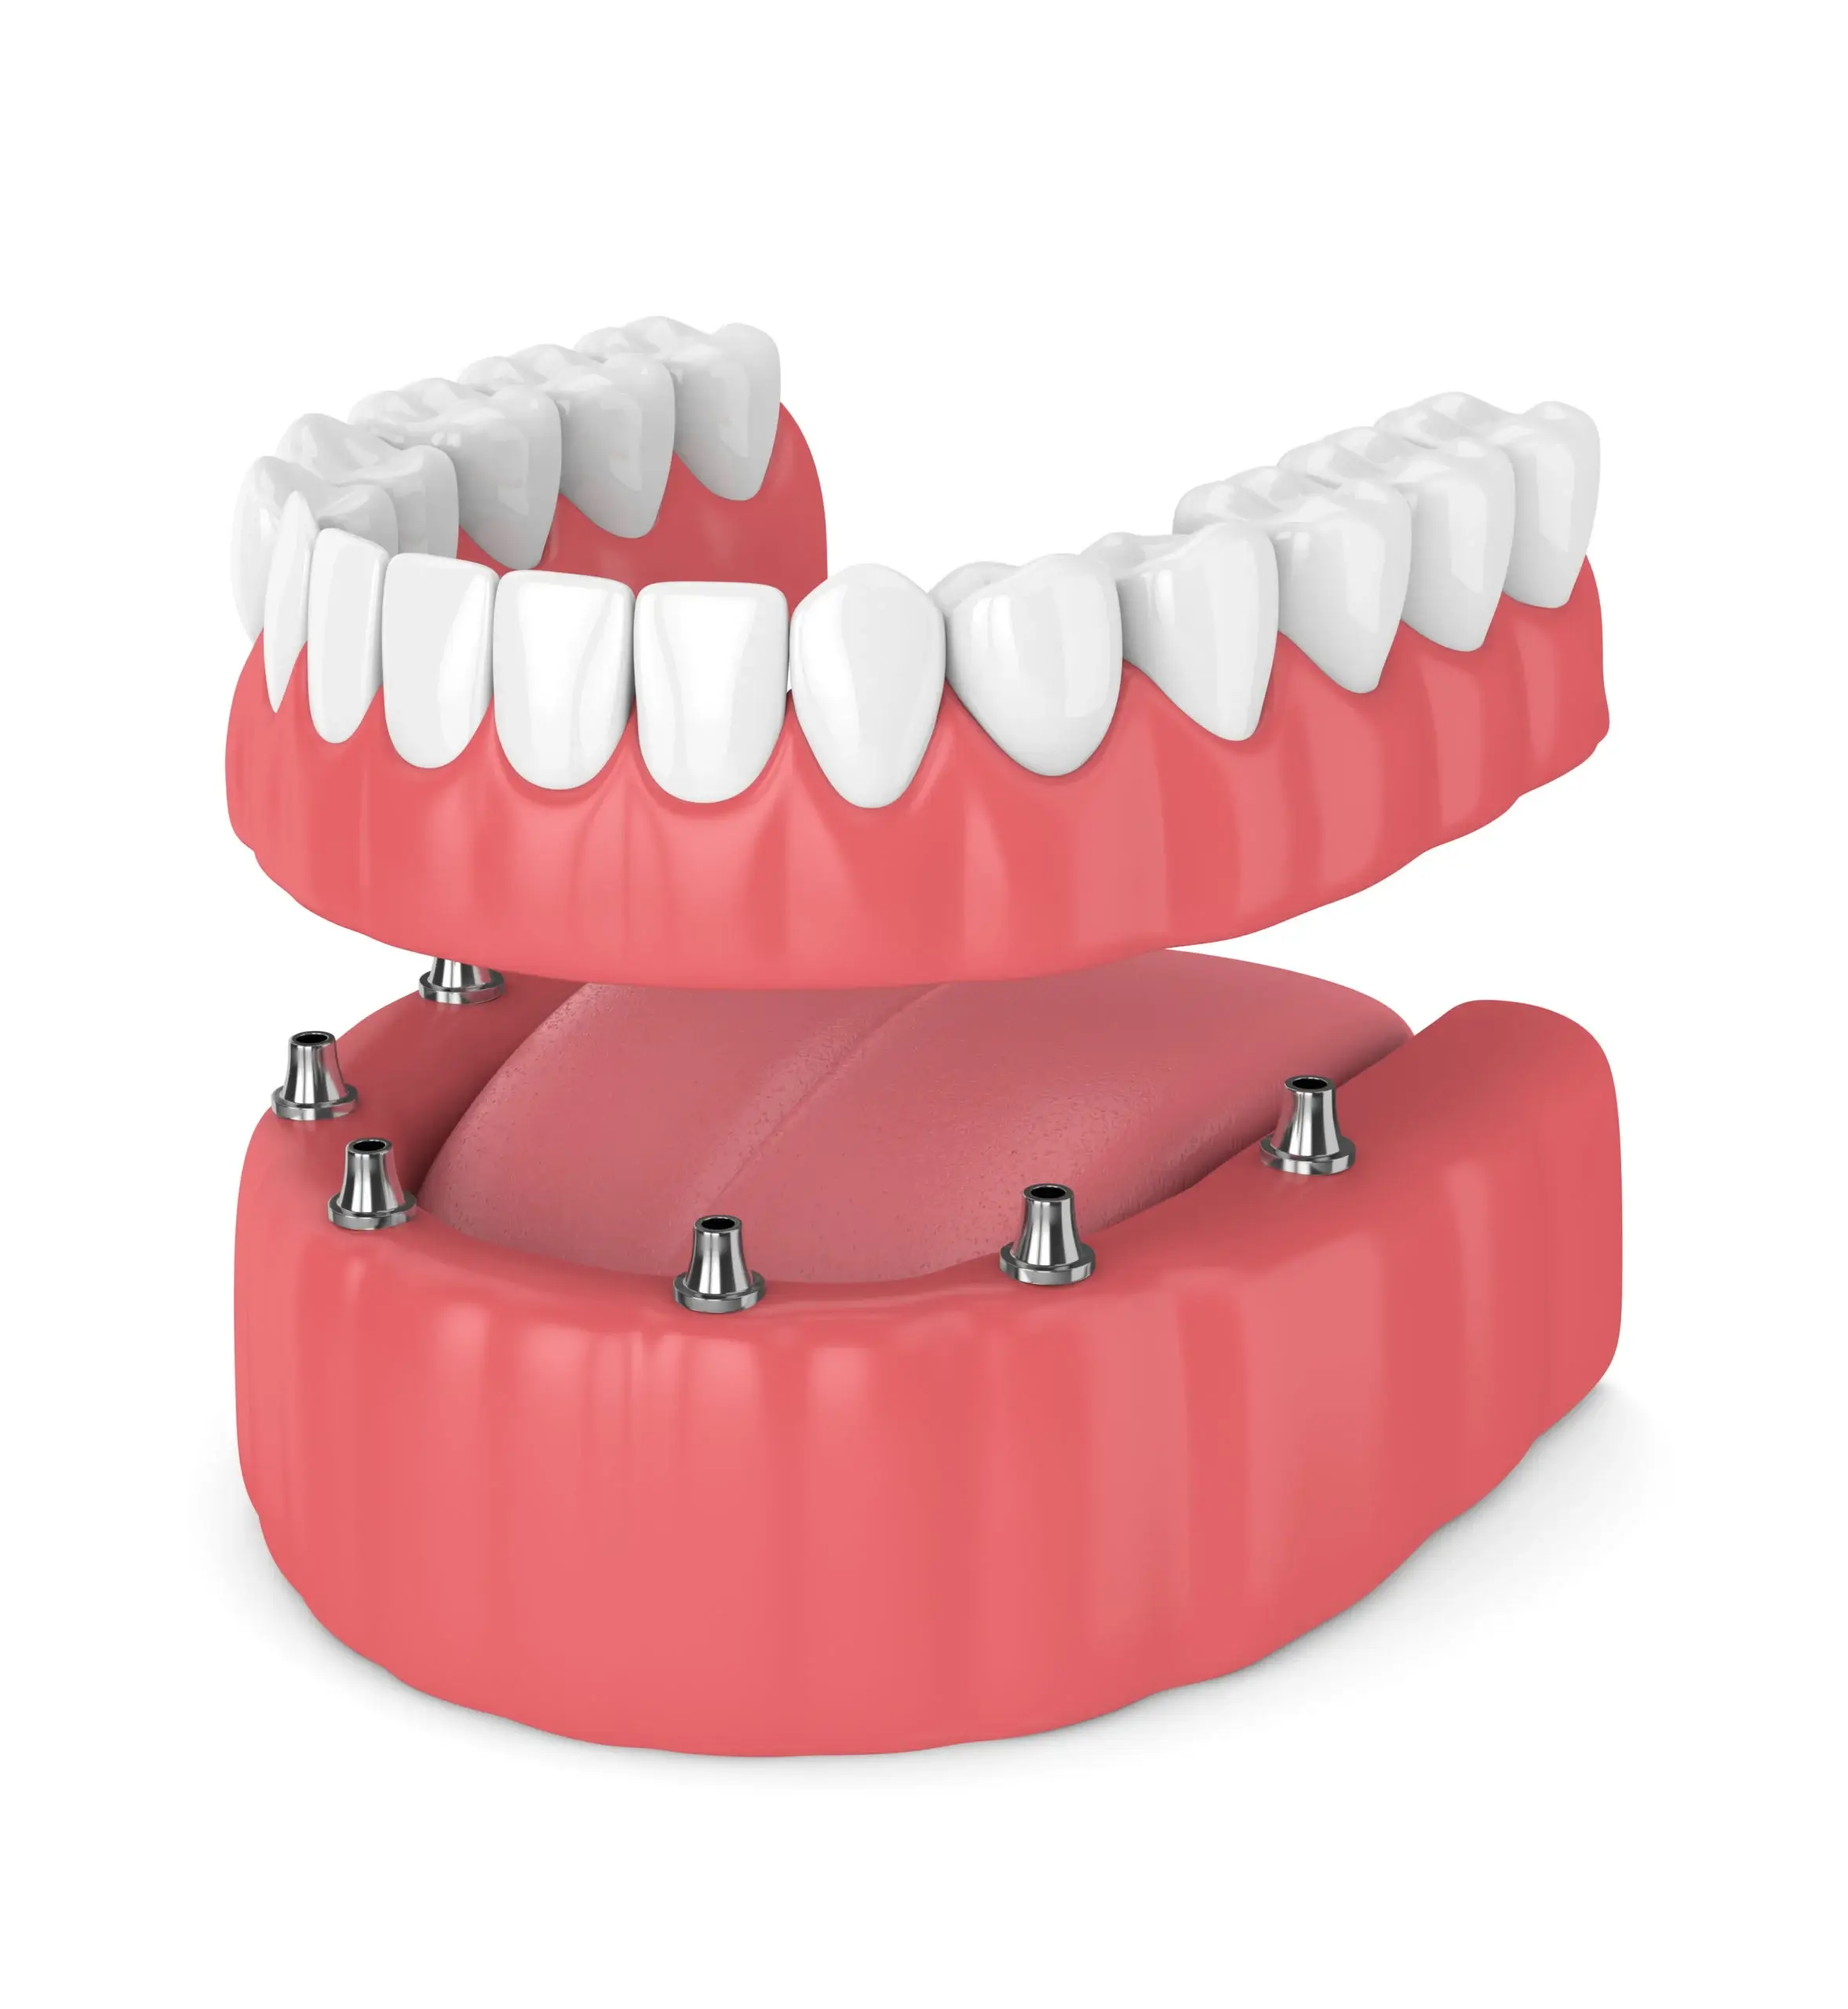 Το κόστος των οδοντικών εμφυτευμάτων πλήρους στόματος με ασφάλιση